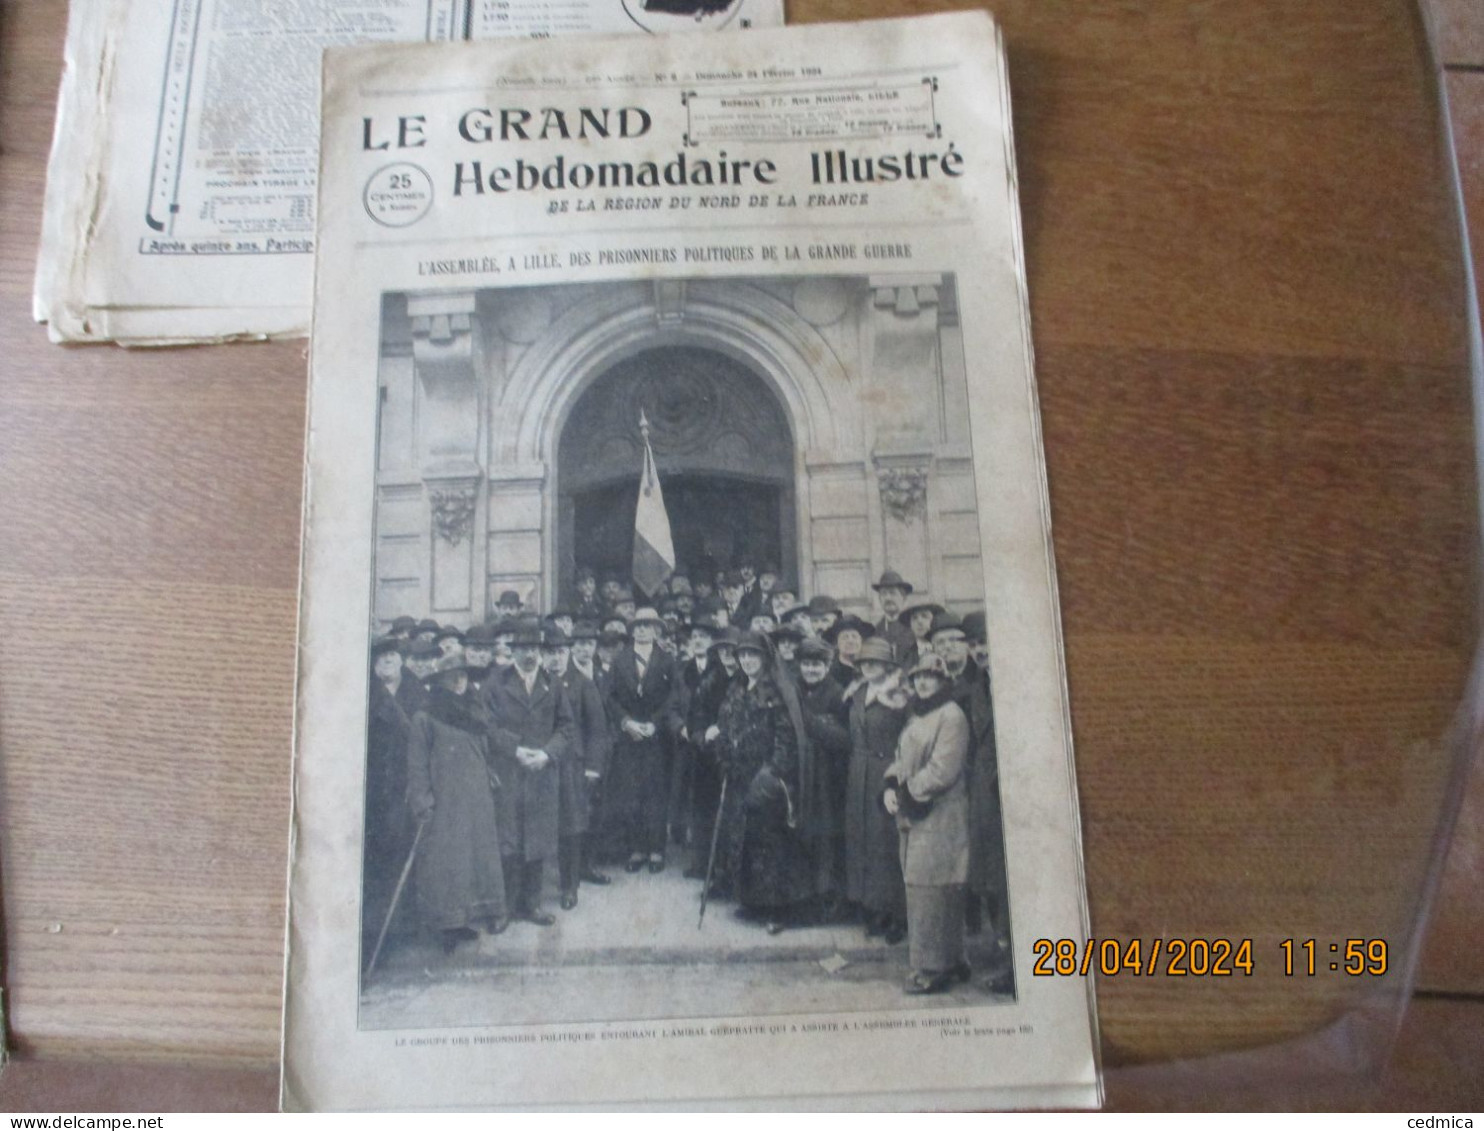 LE GRAND HEBDOMADAIRE ILLUSTRE DU NORD 24 FEVRIER 1924 L'ASSEMBLEE A LILLE DES PRISONNIERS POLITIQUES DE LA GRANDE GUERR - Picardie - Nord-Pas-de-Calais